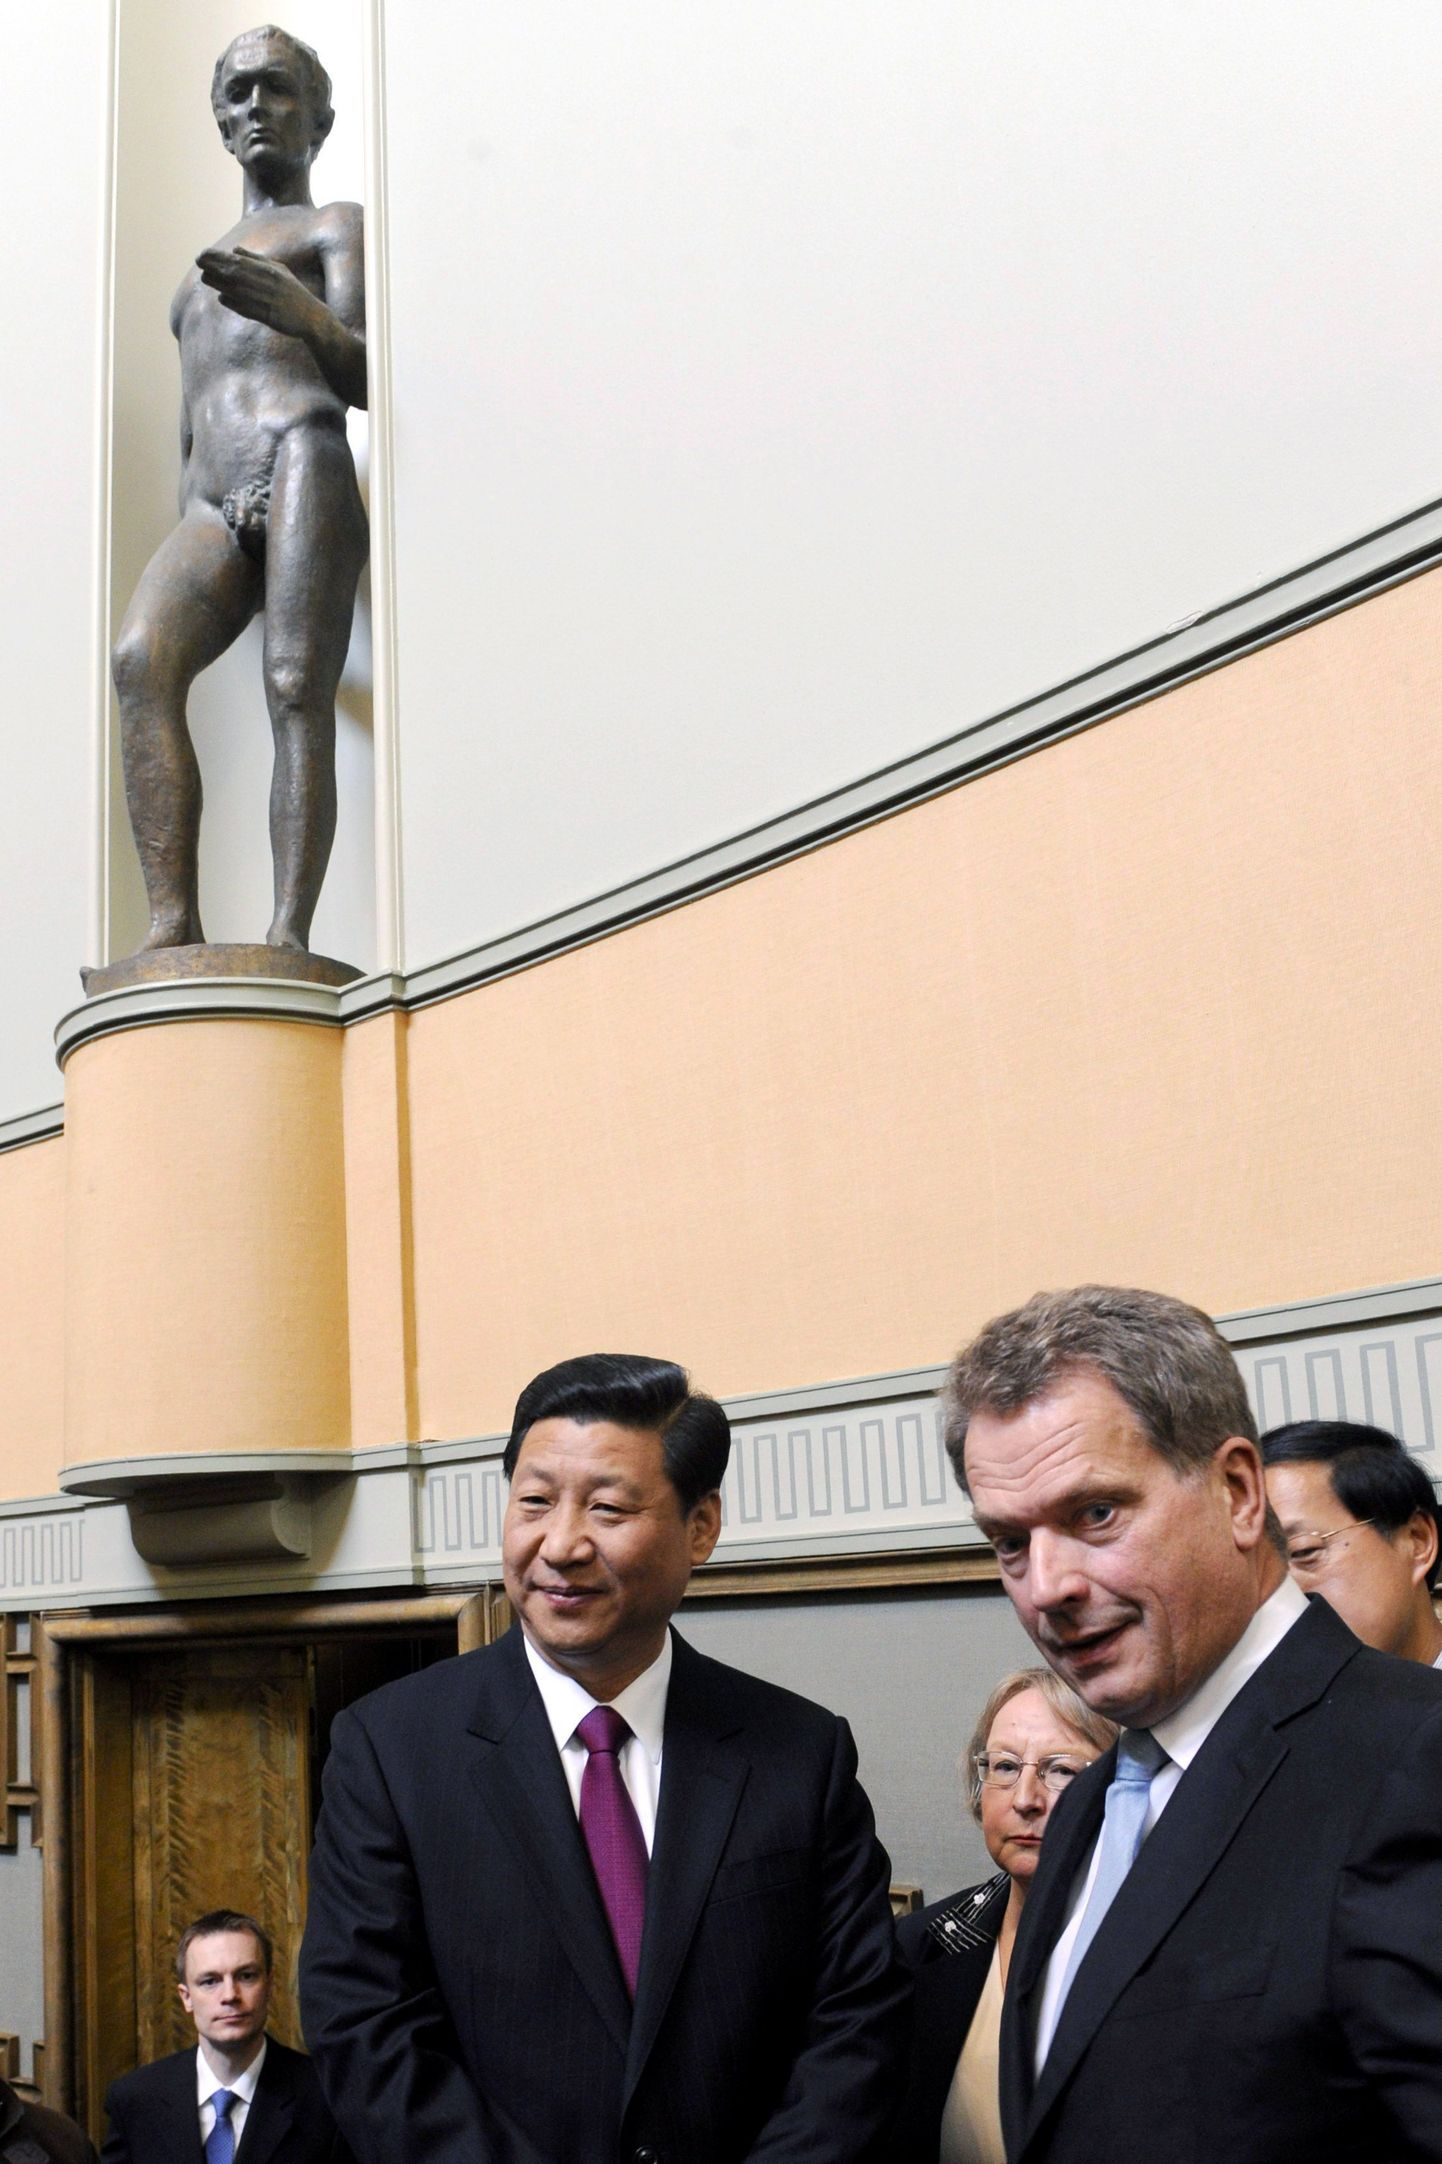 Soome parlamendi spiiker Sauli Niinistö (paremal) koos Hiina asepresidendi Xi Jinpingiga märtsis 2010.